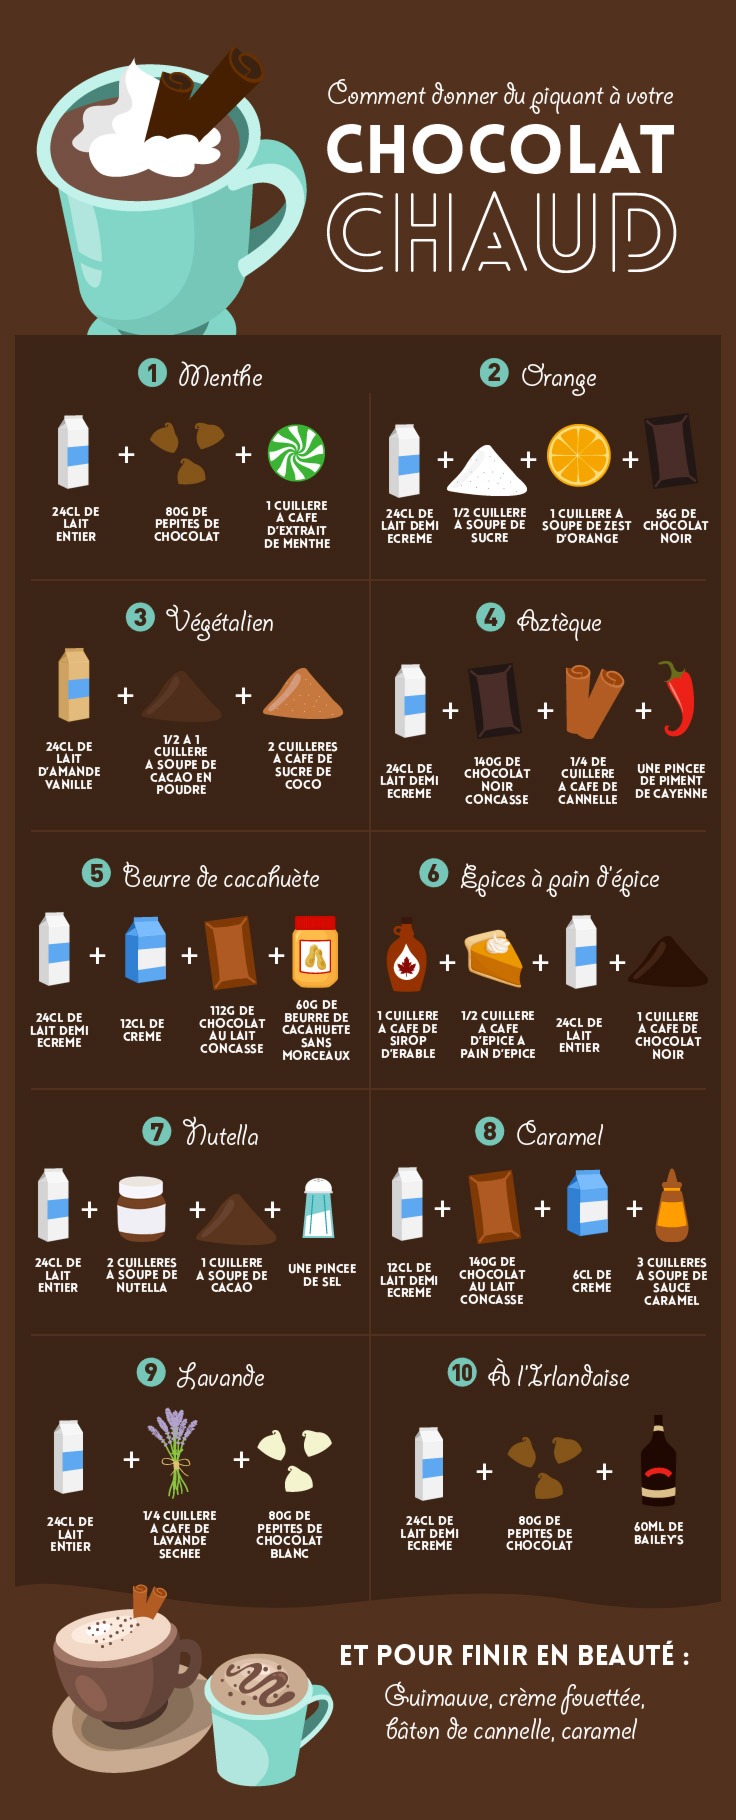 Dix recettes de chocolats chauds pour une personne.